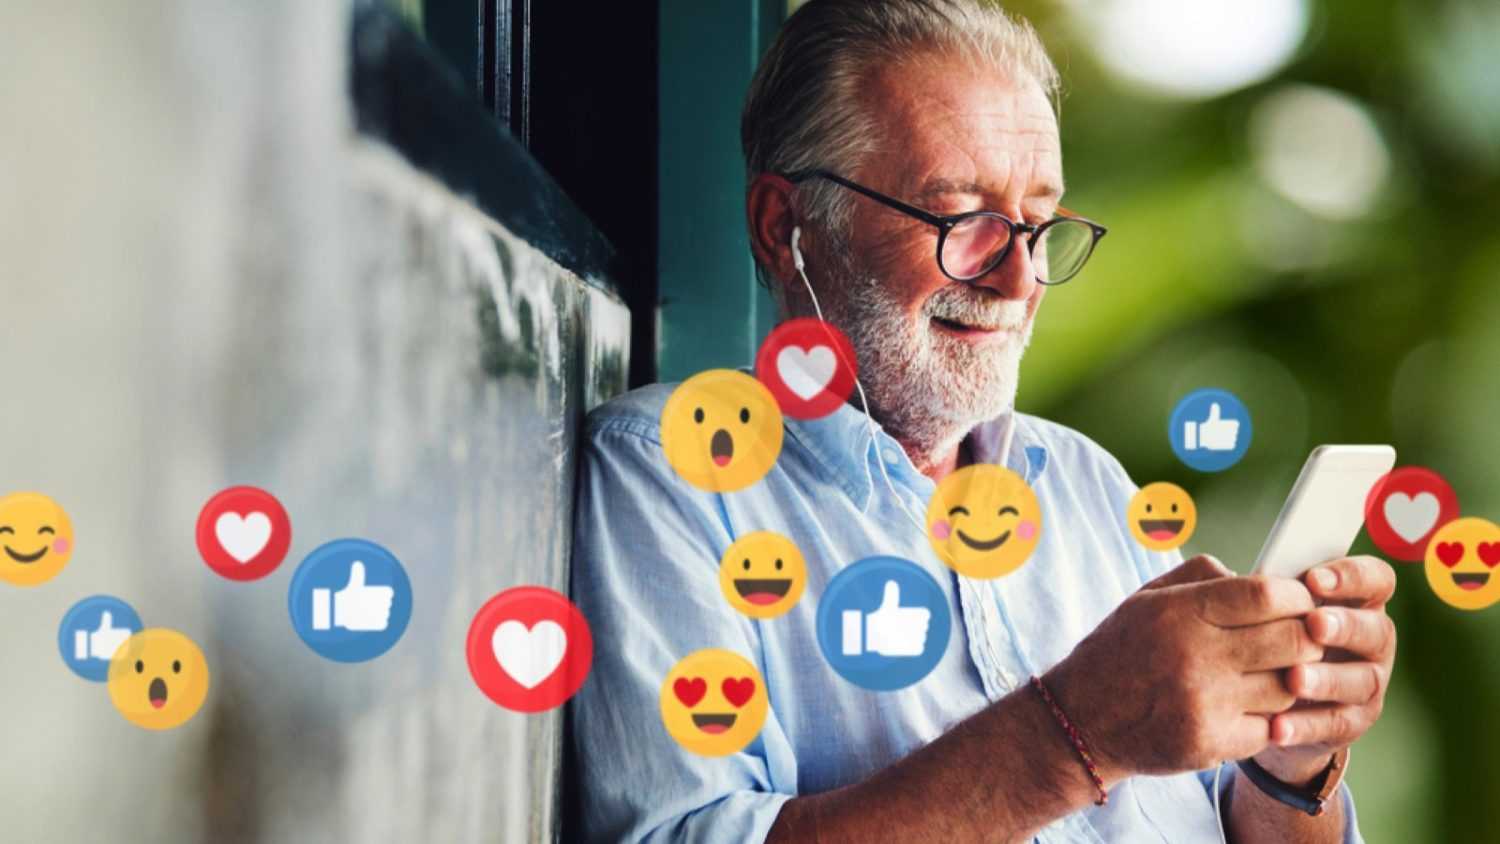 Old man using emoji